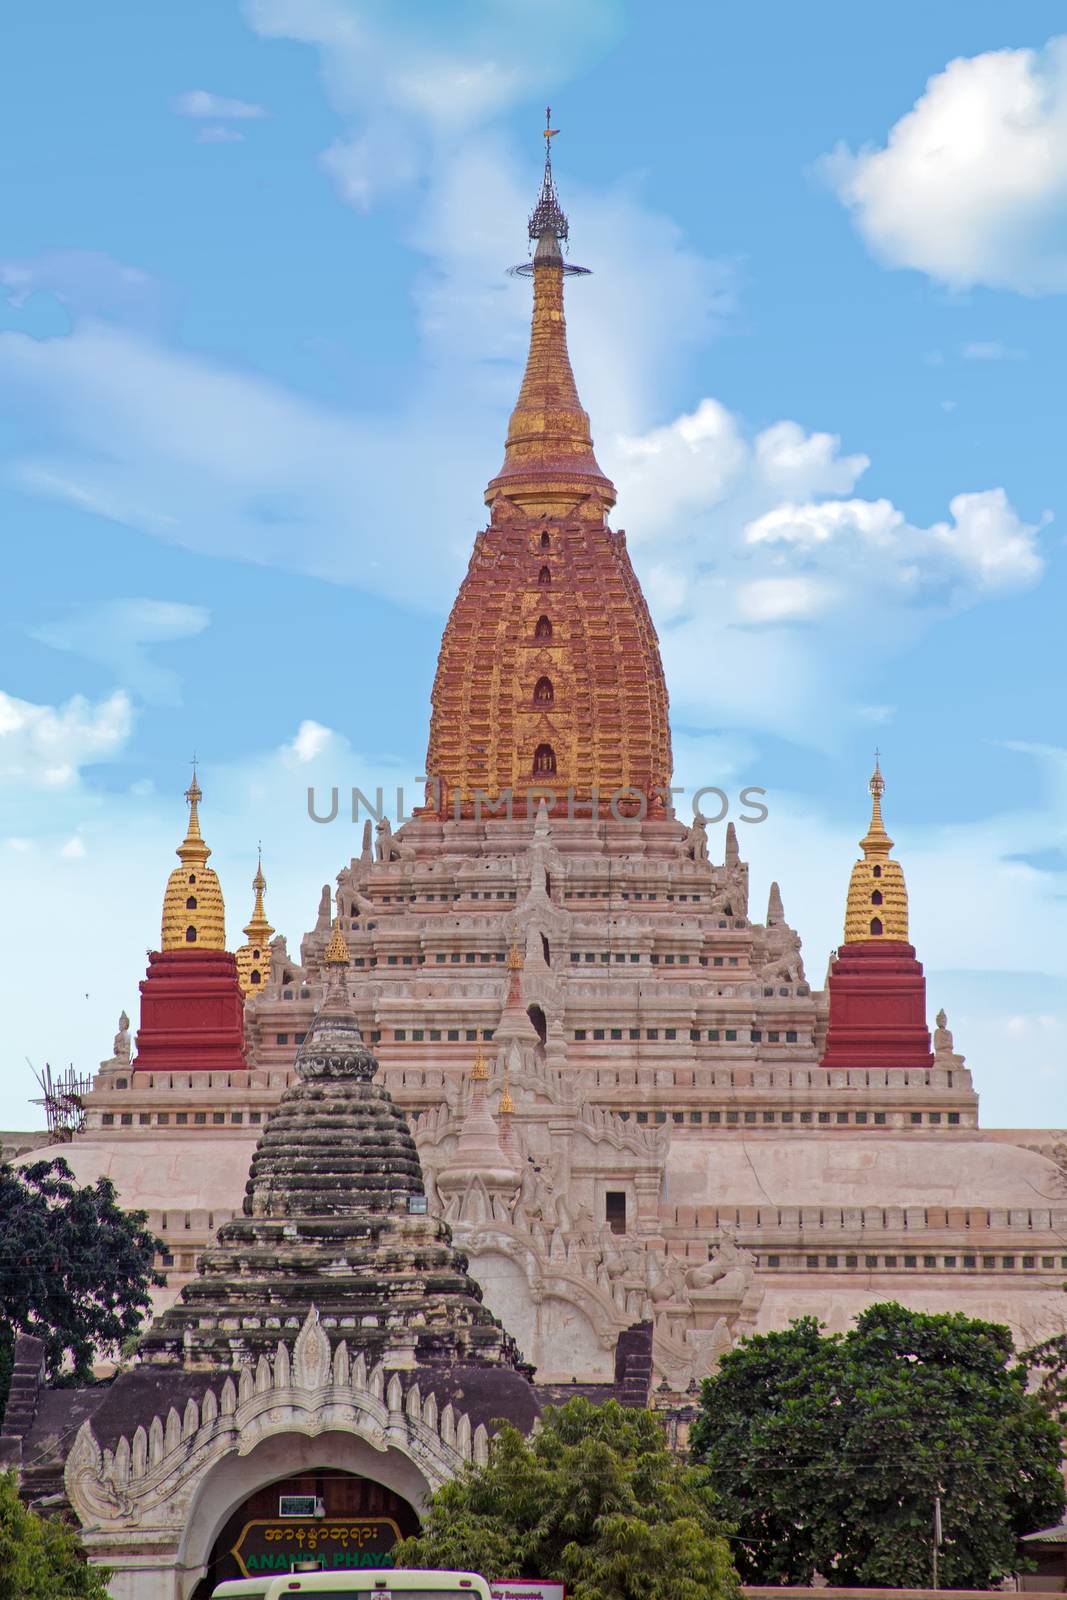 Ananda temple in Bagan, Myanmar.